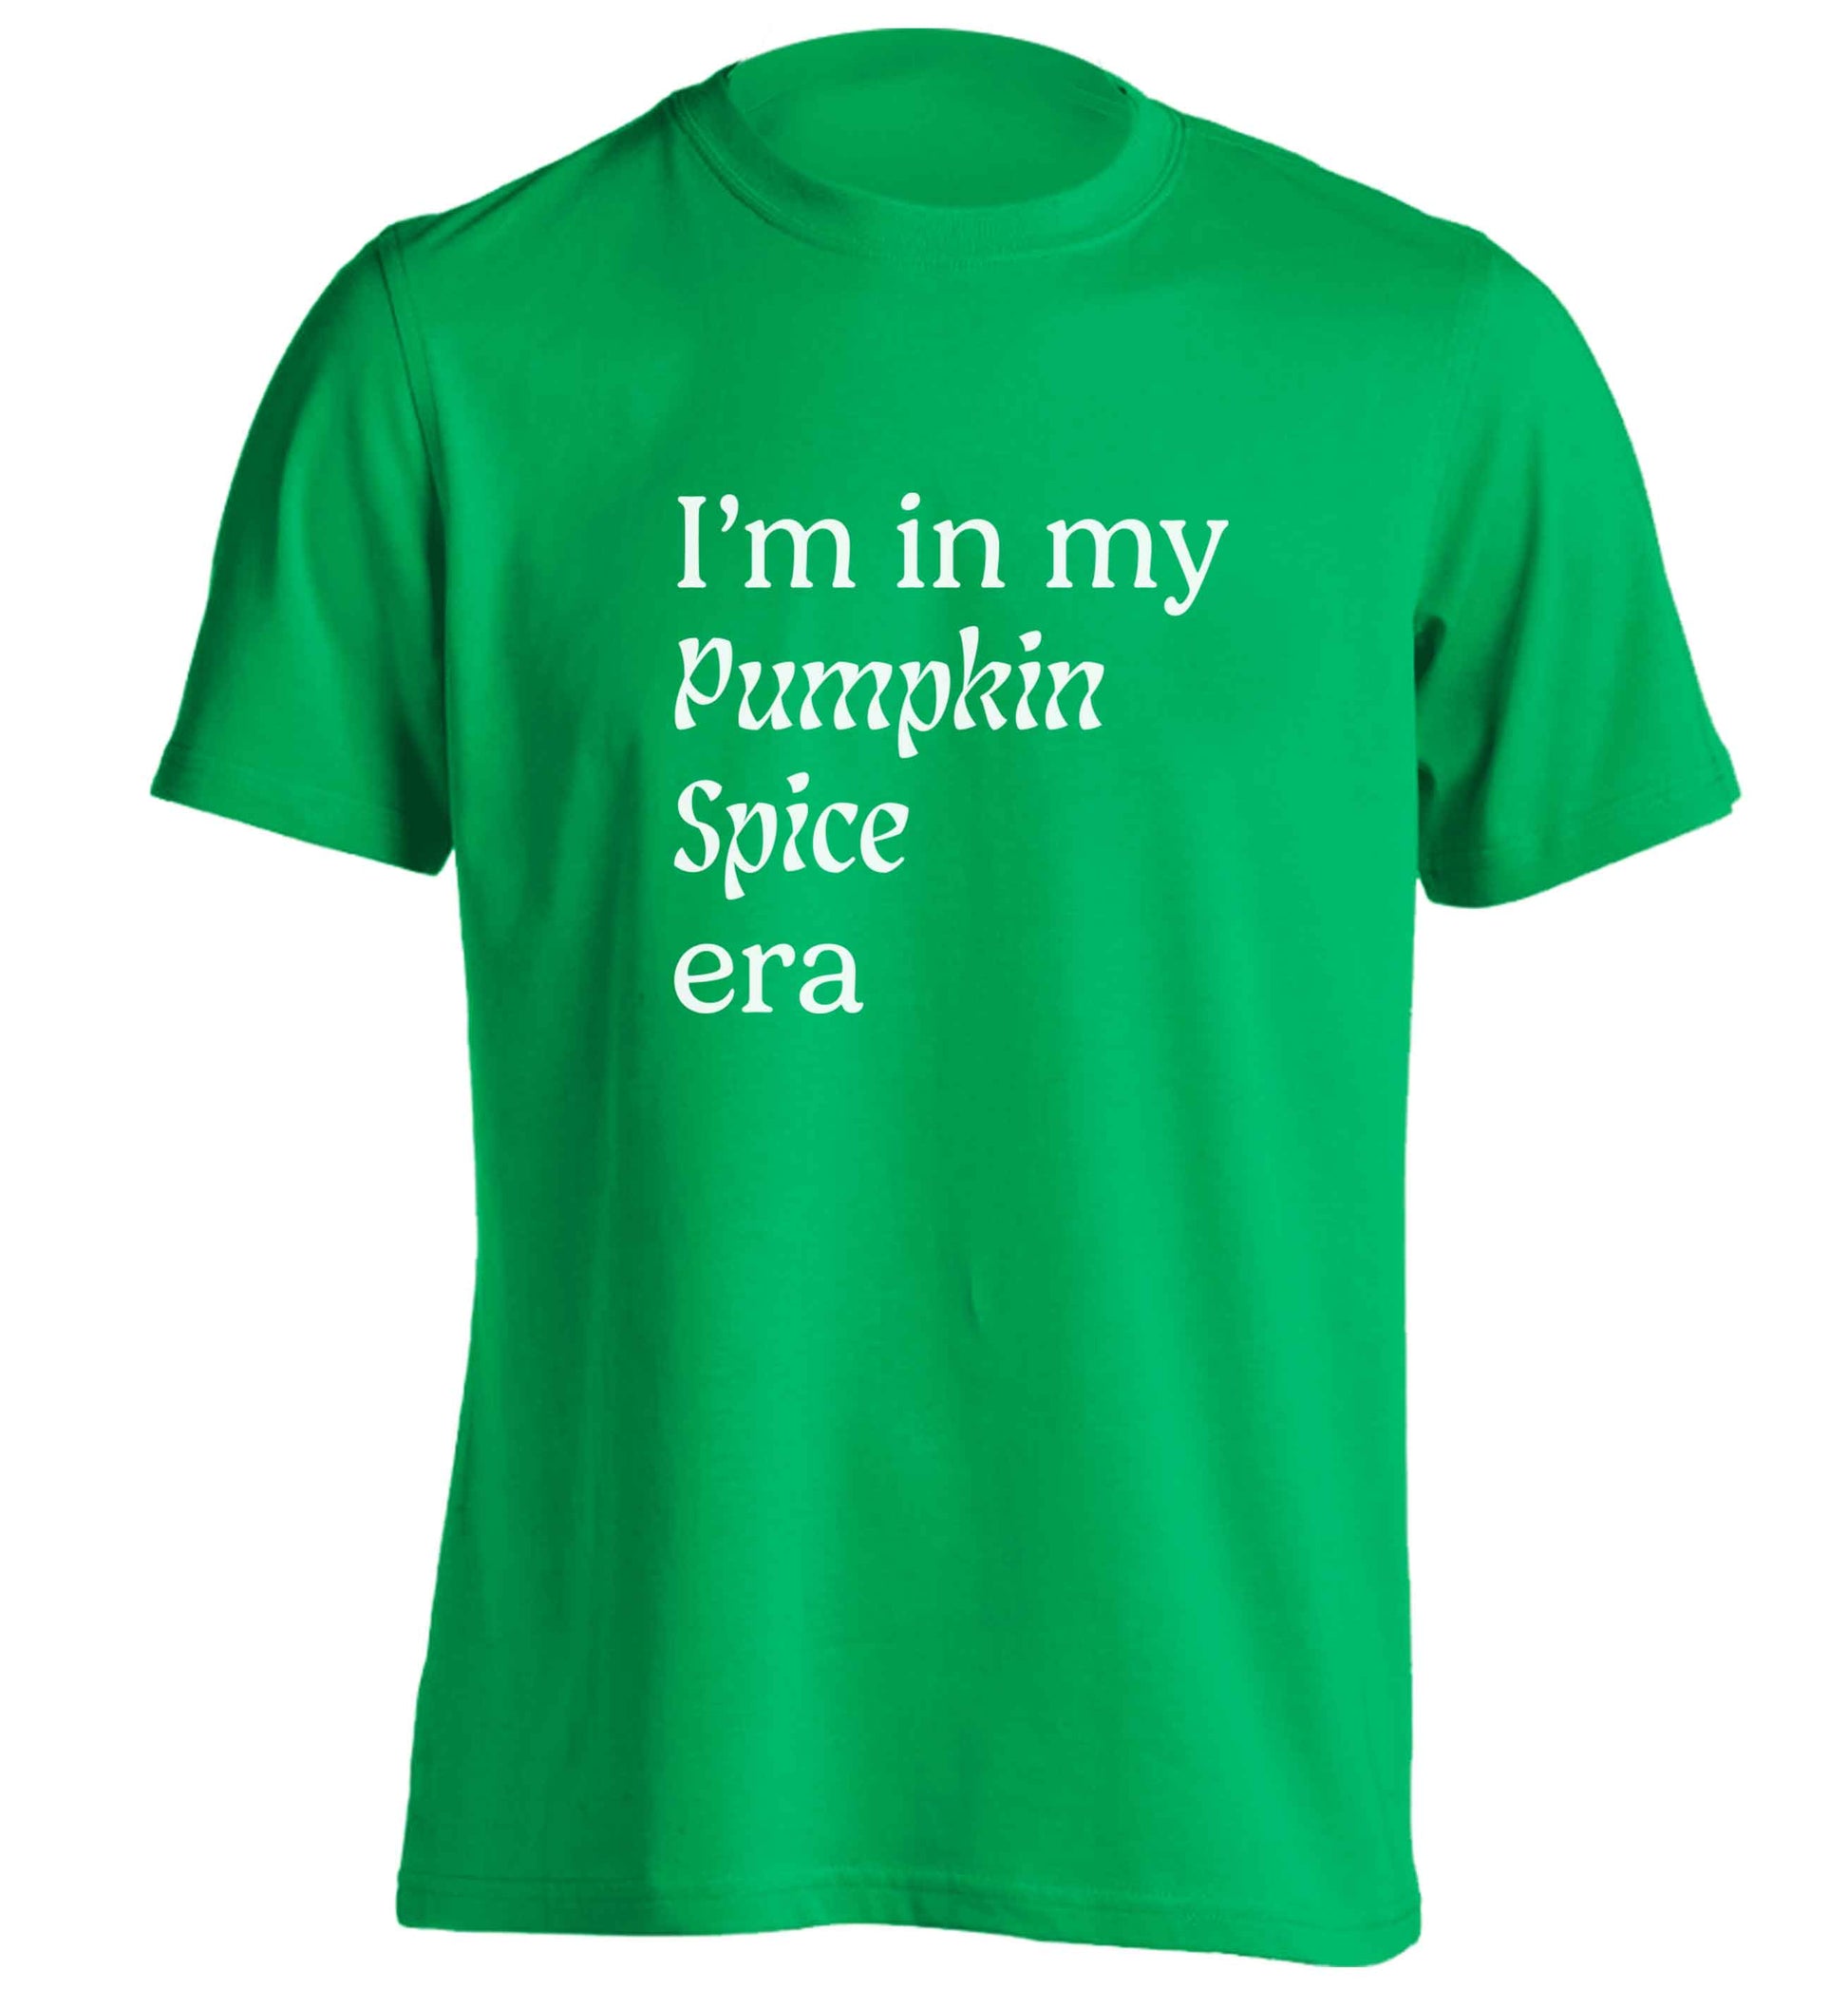 I'm in my pumpkin spice era Kit adults unisex green Tshirt 2XL